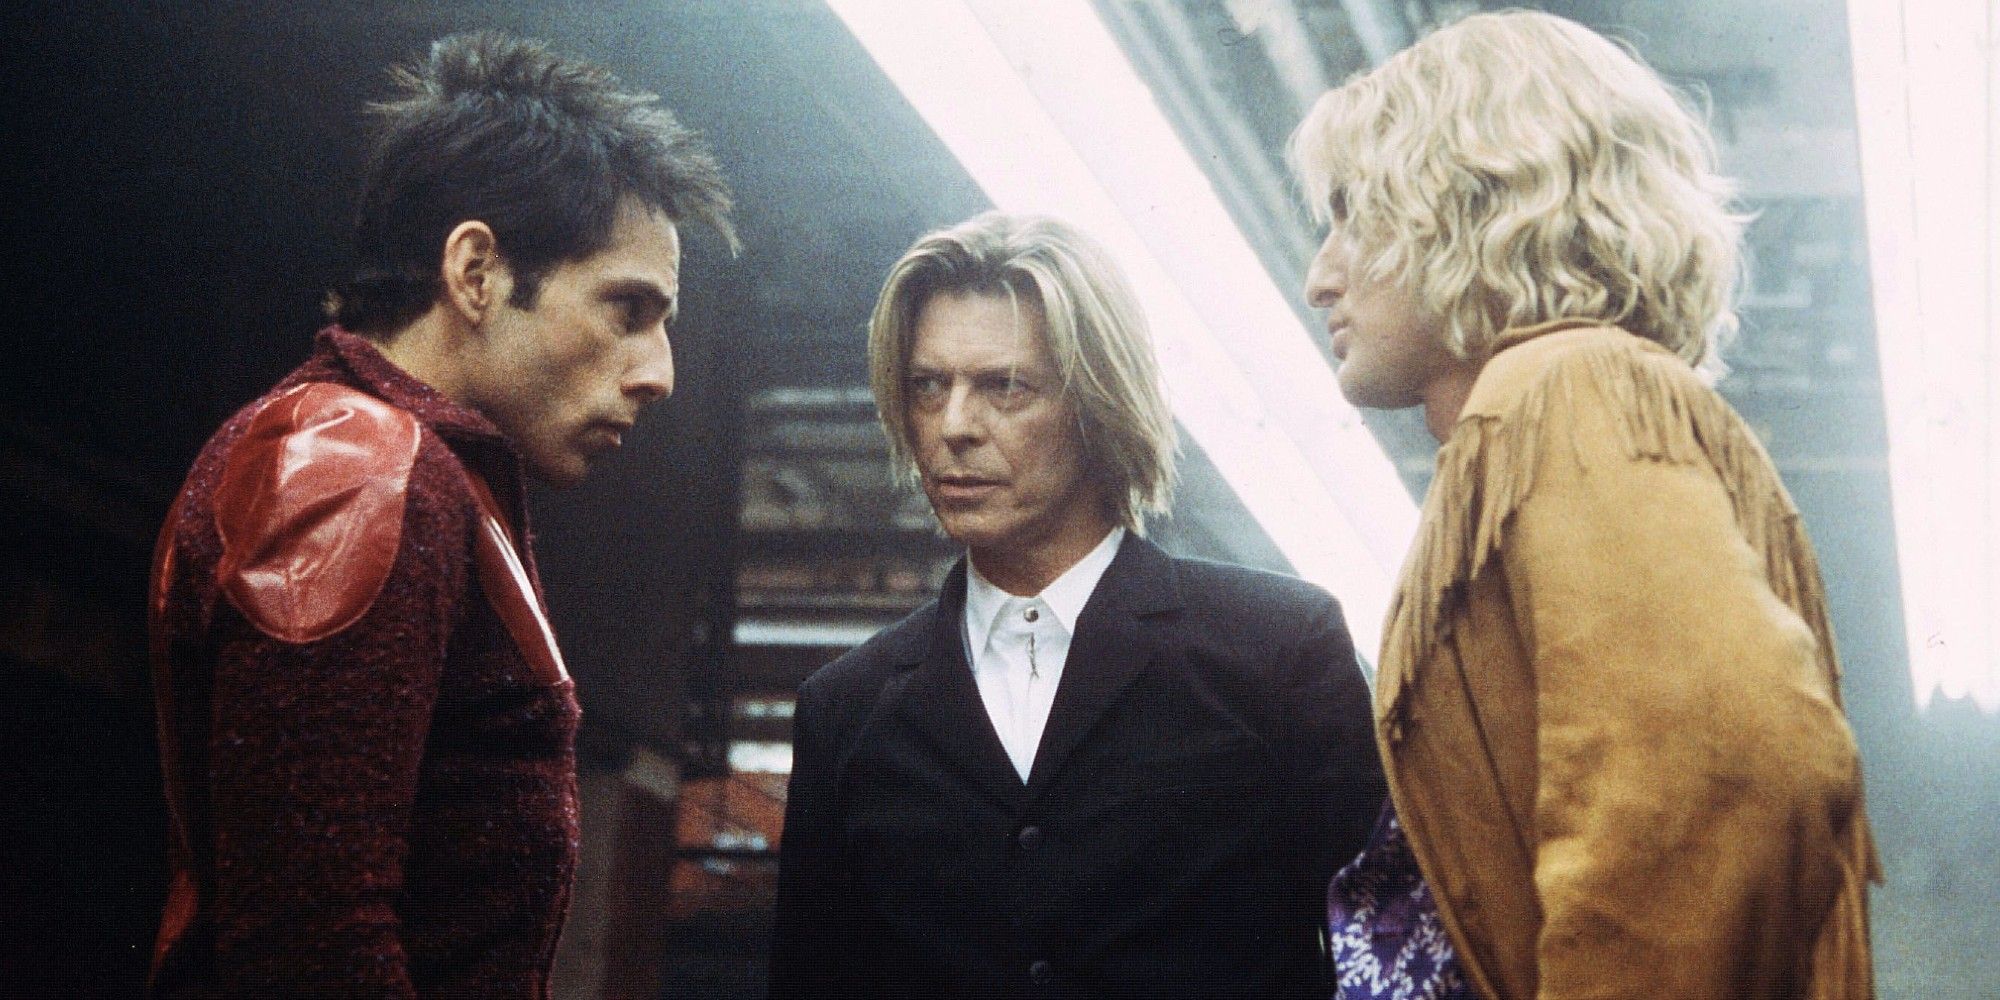 Ben Stiller, David Bowie and Owen Wilson in 'Zoolander'